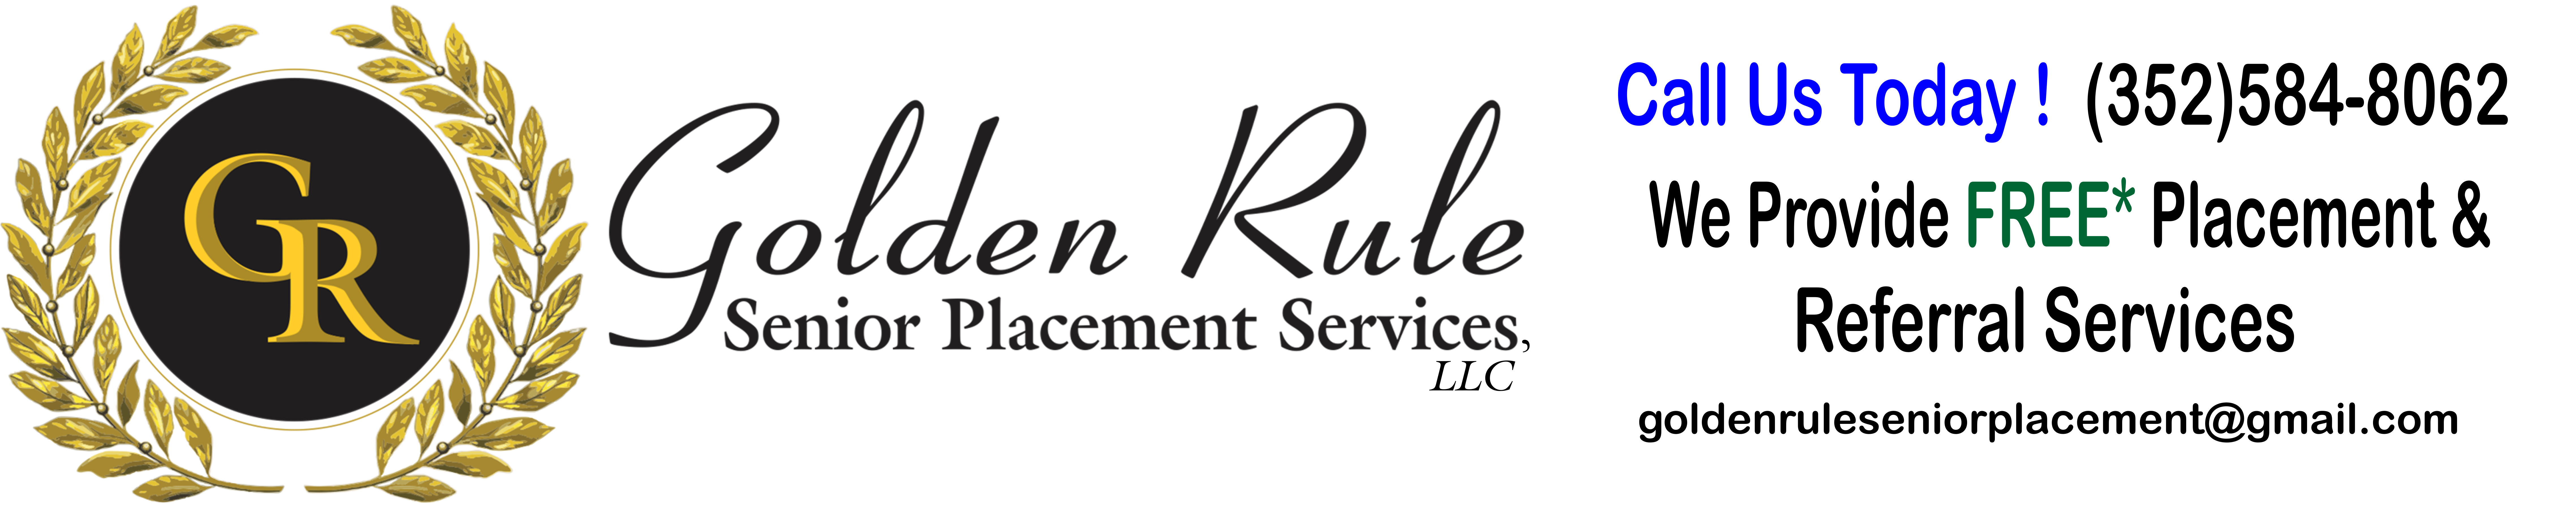 Golden Rule Senior Placement Services